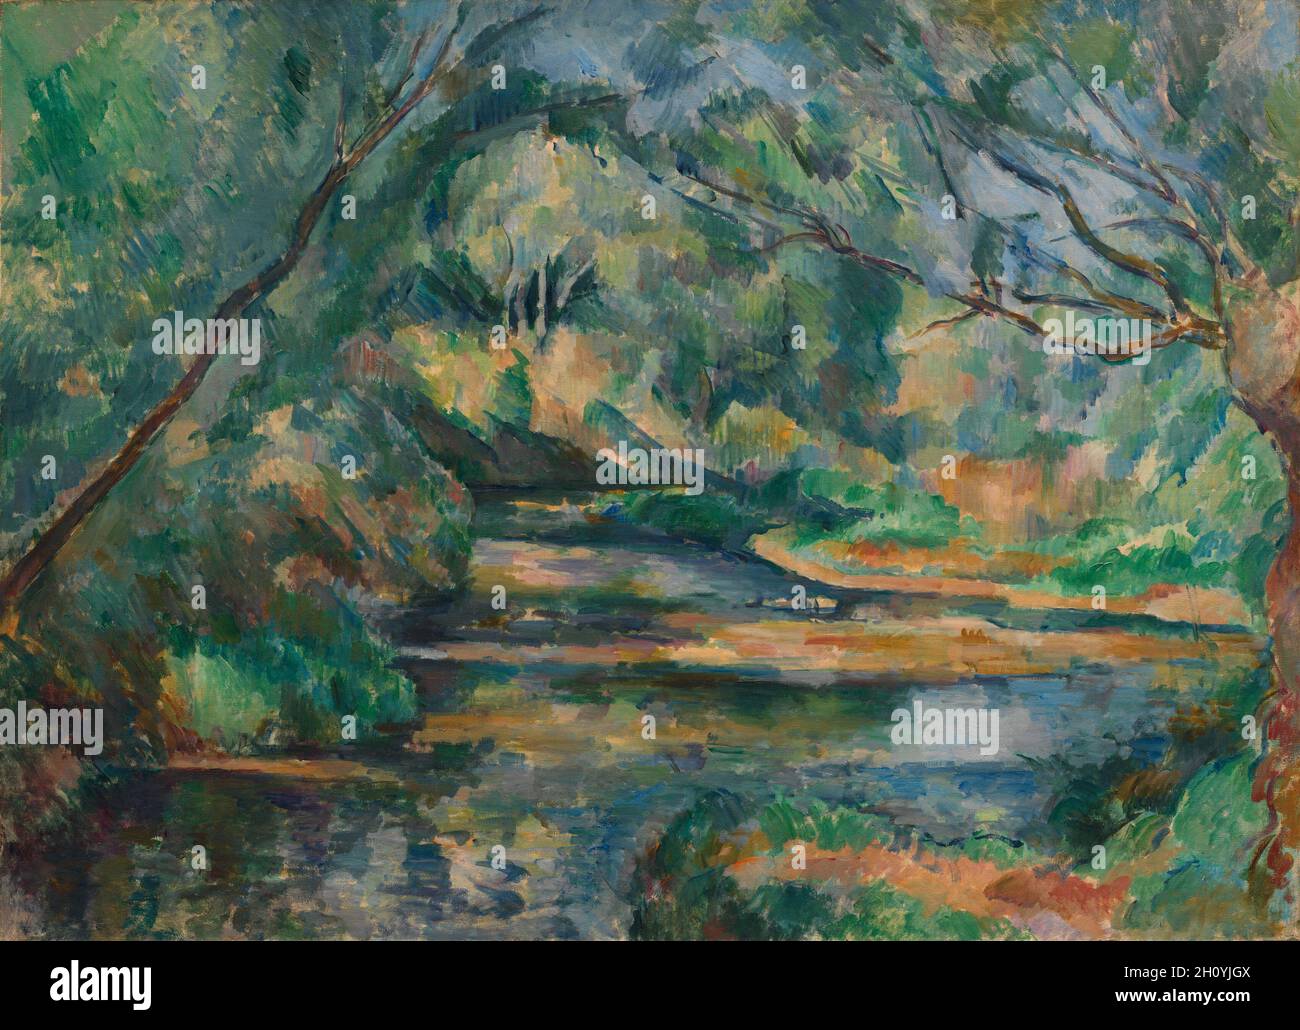 The Brook, c. 1895-1900. Paul Cézanne (Französisch, 1839-1906). Öl auf Stoff; gerahmt: 74.9 x 97.2 x 8.3 cm (29 1/2 x 38 1/4 x 3 1/4 Zoll); ungerahmt: 59.2 x 81 cm (23 5/16 x 31 7/8 Zoll). Dieses Gemälde zeigt das Tal des Flusses Arc, das südöstlich von Cézannes Haus in Aix-en-Provence verläuft. Organisierte Farb- und Pinselmuster deuten darauf hin, dass Cézanne daran interessiert war, seine visuellen Empfindungen durch gerichtete Pinselstriche und Muster warmer und kühler Farben zu strukturieren. Er schuf auch eine einheitlichere Komposition, indem er die Farbintensität durchgehend beibehielt, anstatt die Töne zu vermindern Stockfoto